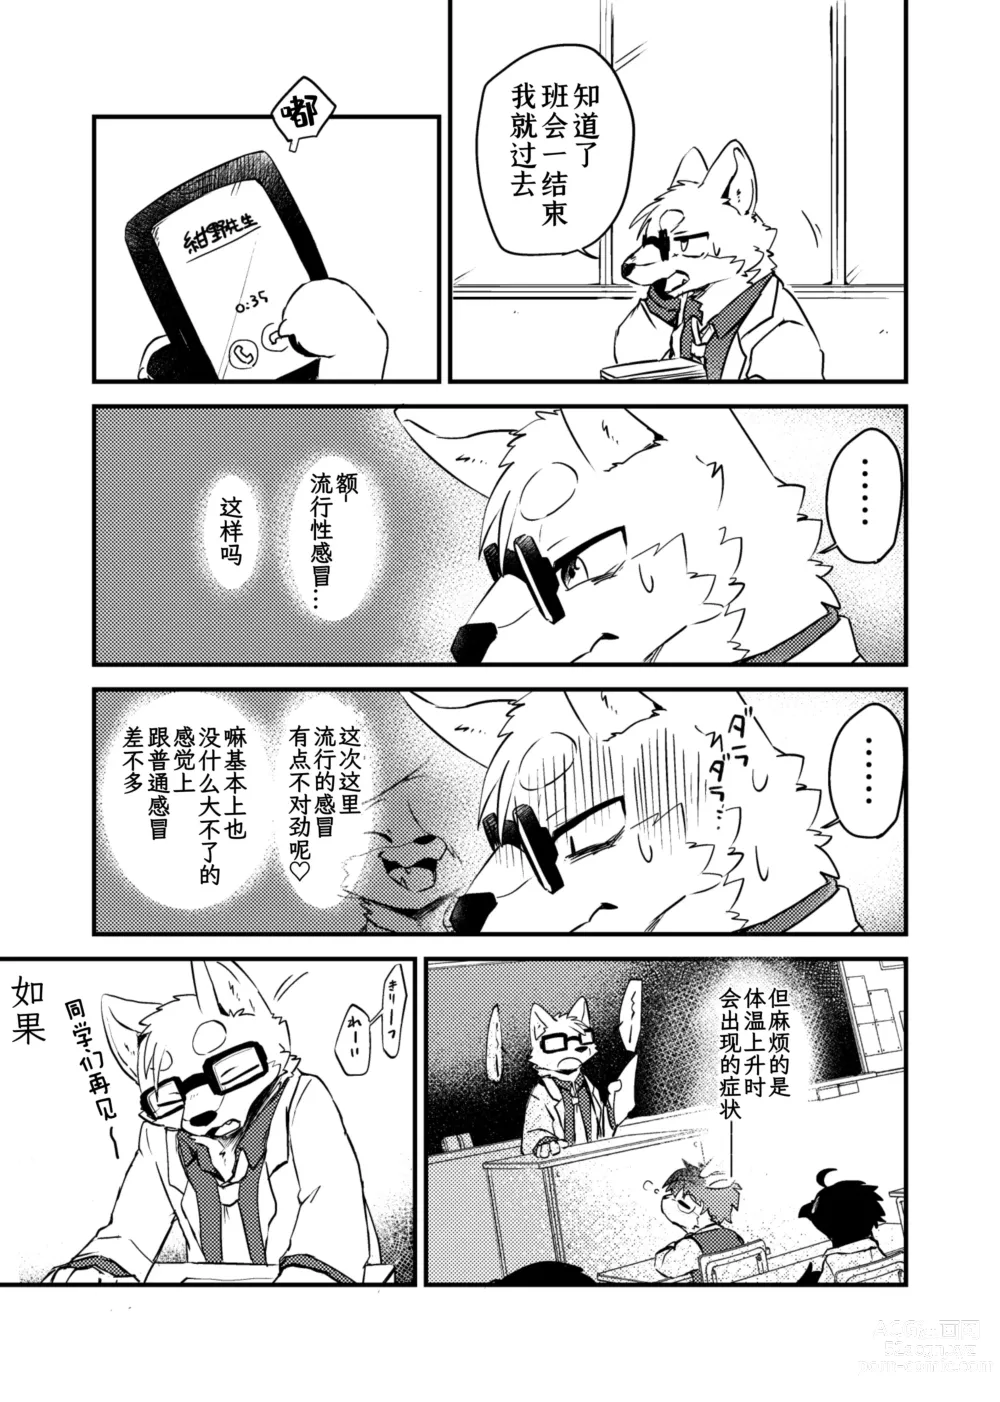 Page 11 of doujinshi 老师和我。流行性感冒务必要注意哦！？